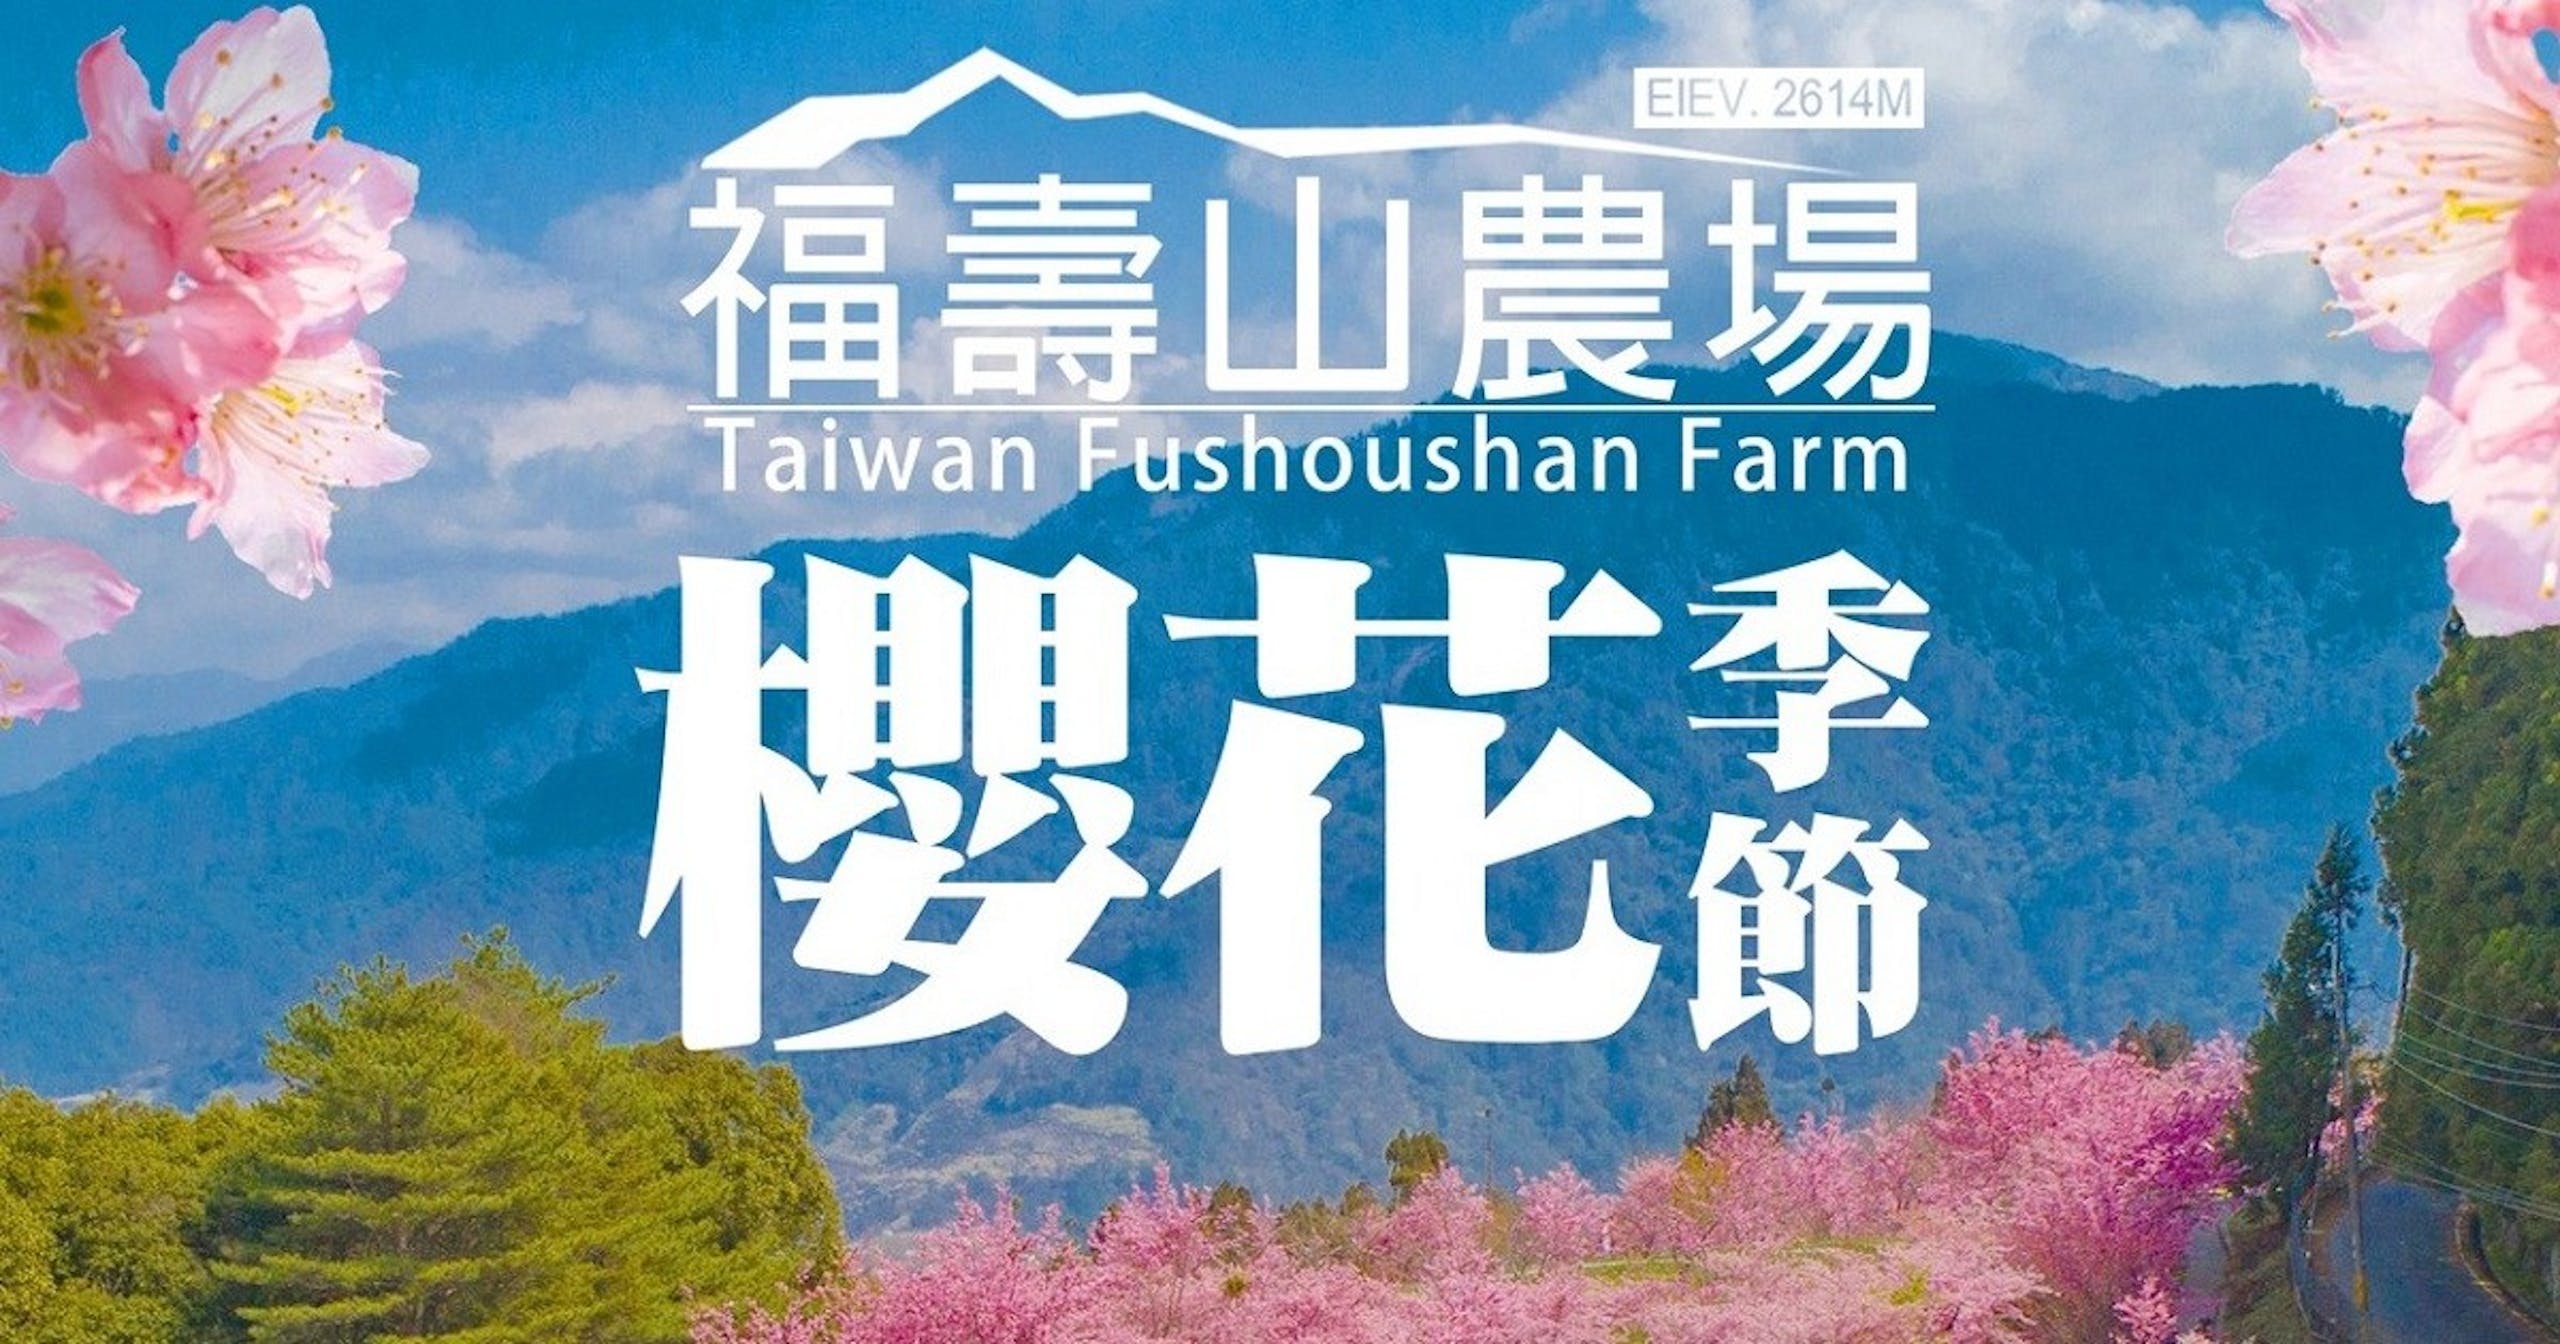 照片中提到了EIEV. 2614M、福壽山農場、Taiwan Fushoushan Farm，包含了性質、櫻花盛開、文本、性質、圖形